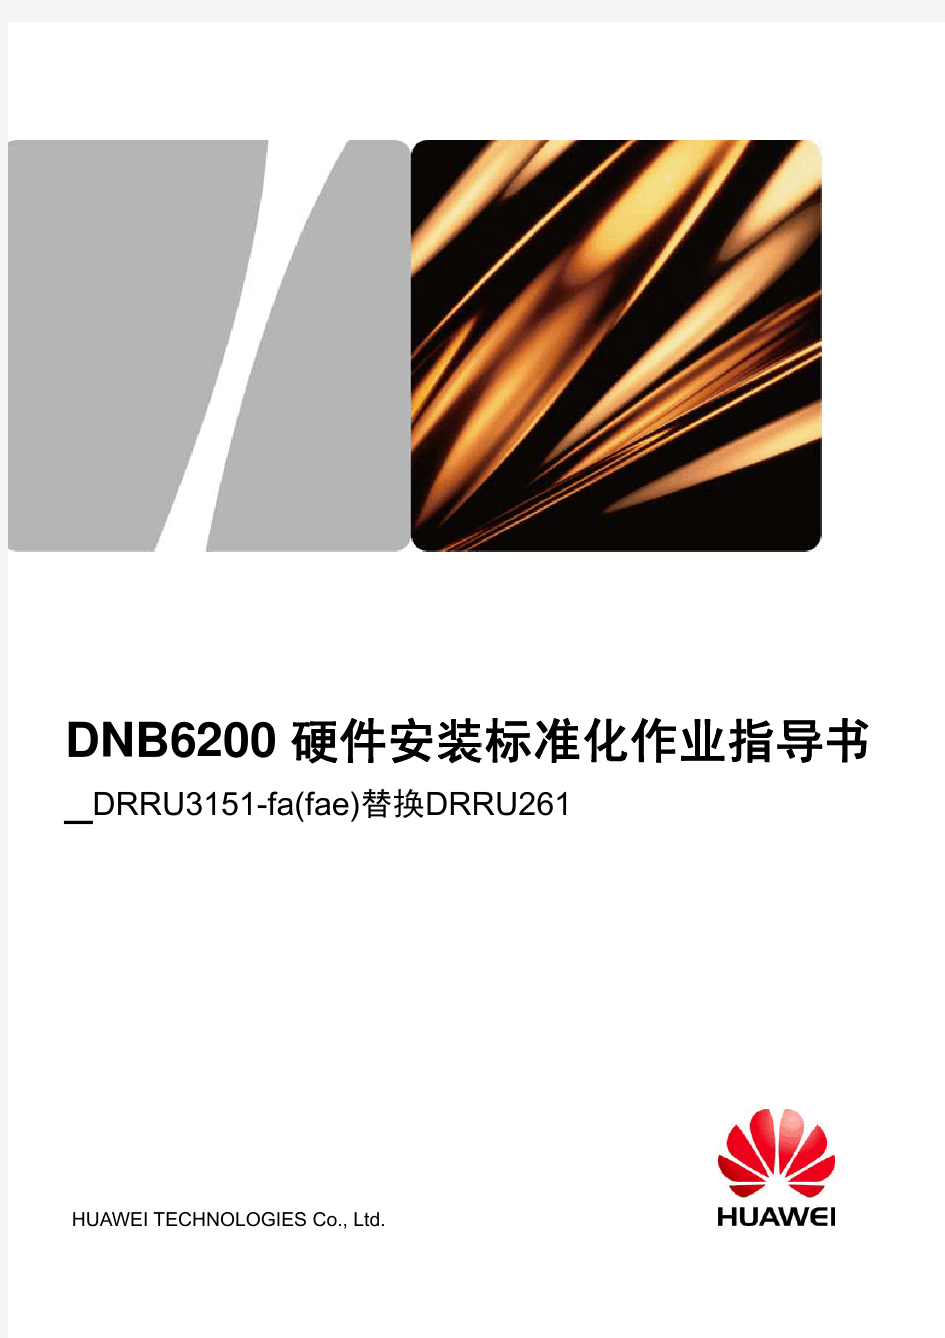 华为TD四期设备-DNB6200 硬件安装标准化作业指导书_DRRU3151-fa(fae)替换DRRU261-20100527-B-V1.0